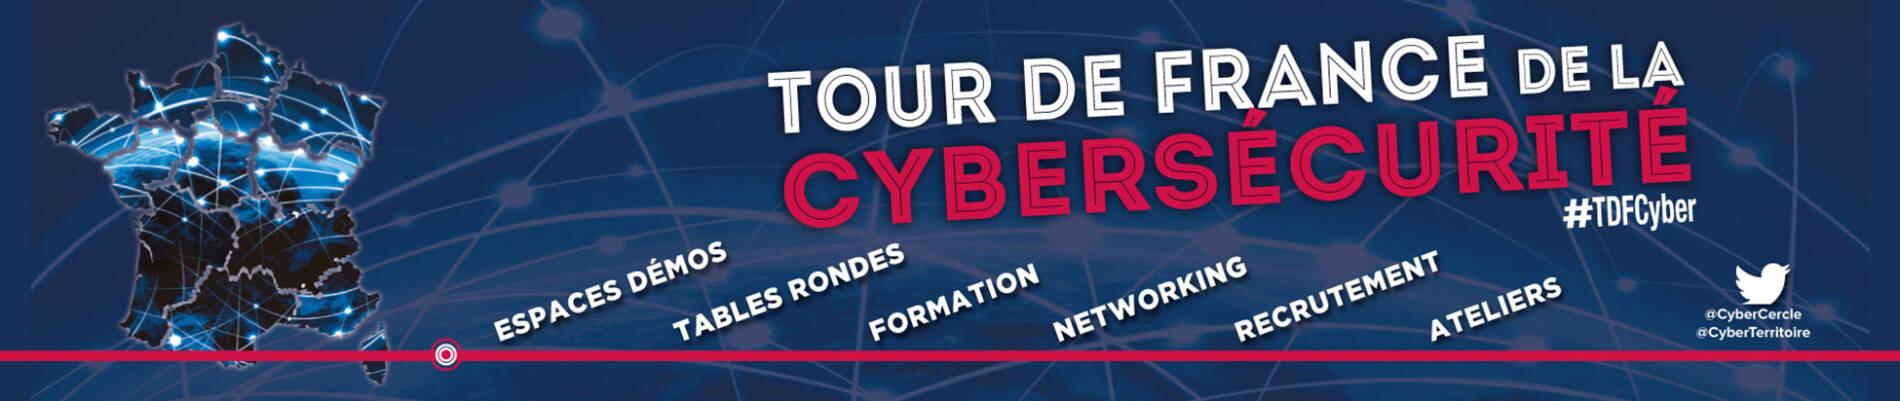 TDFCyber : Le tour de France de la cybersécurité